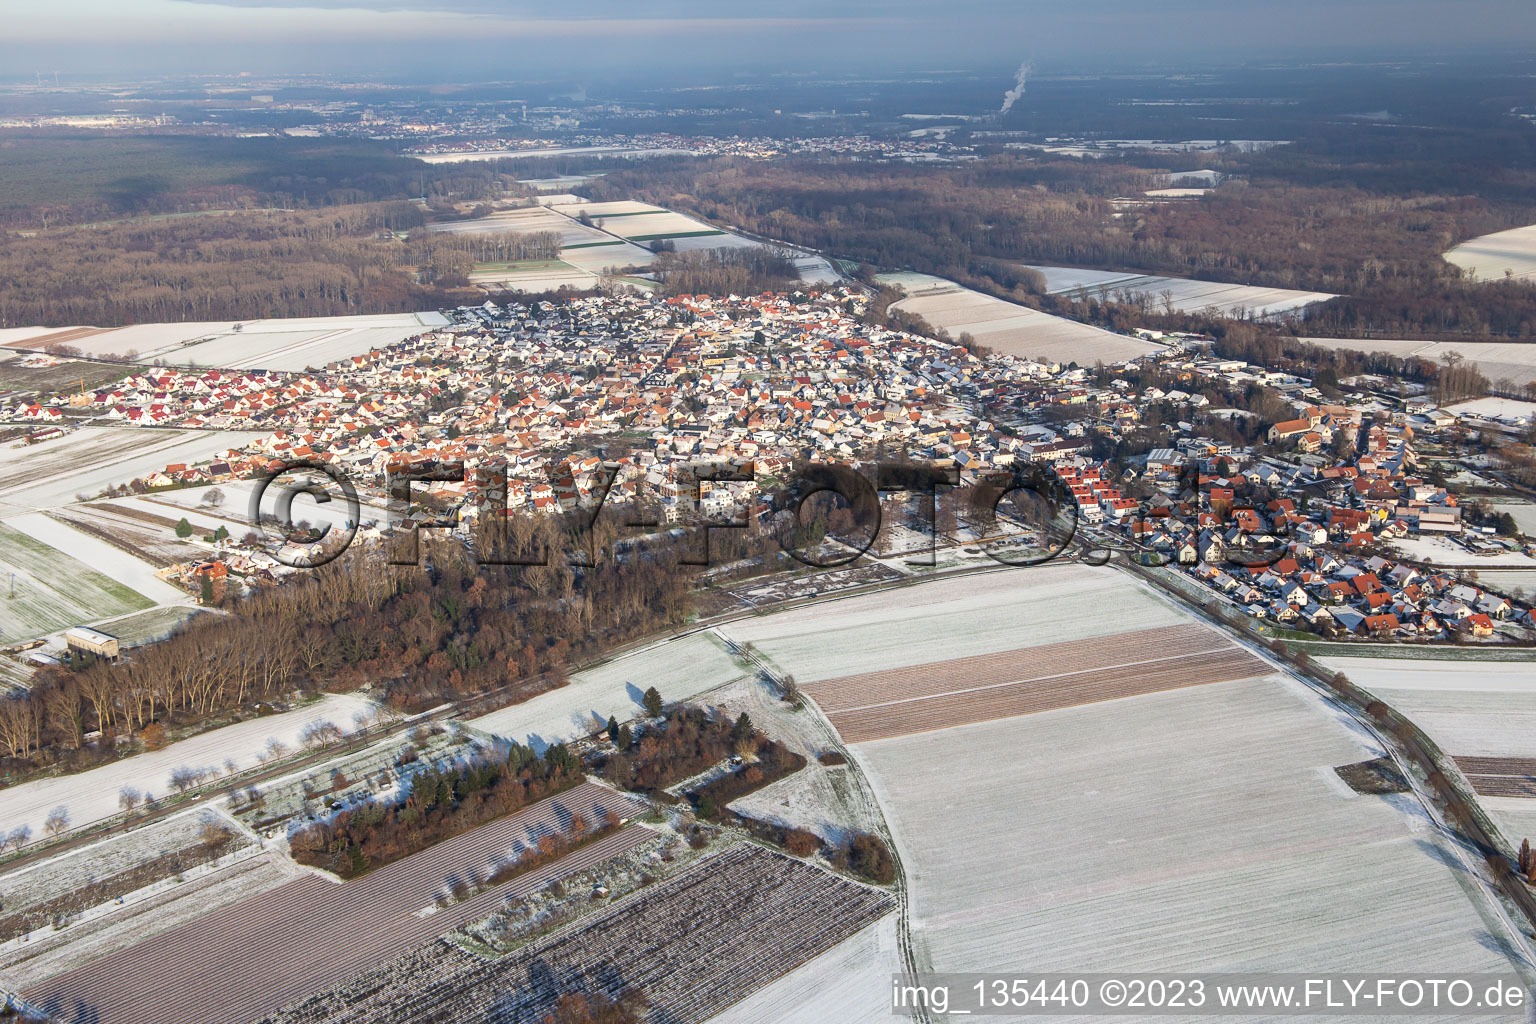 Vue aérienne de En hiver quand il y a de la neige à Hördt dans le département Rhénanie-Palatinat, Allemagne